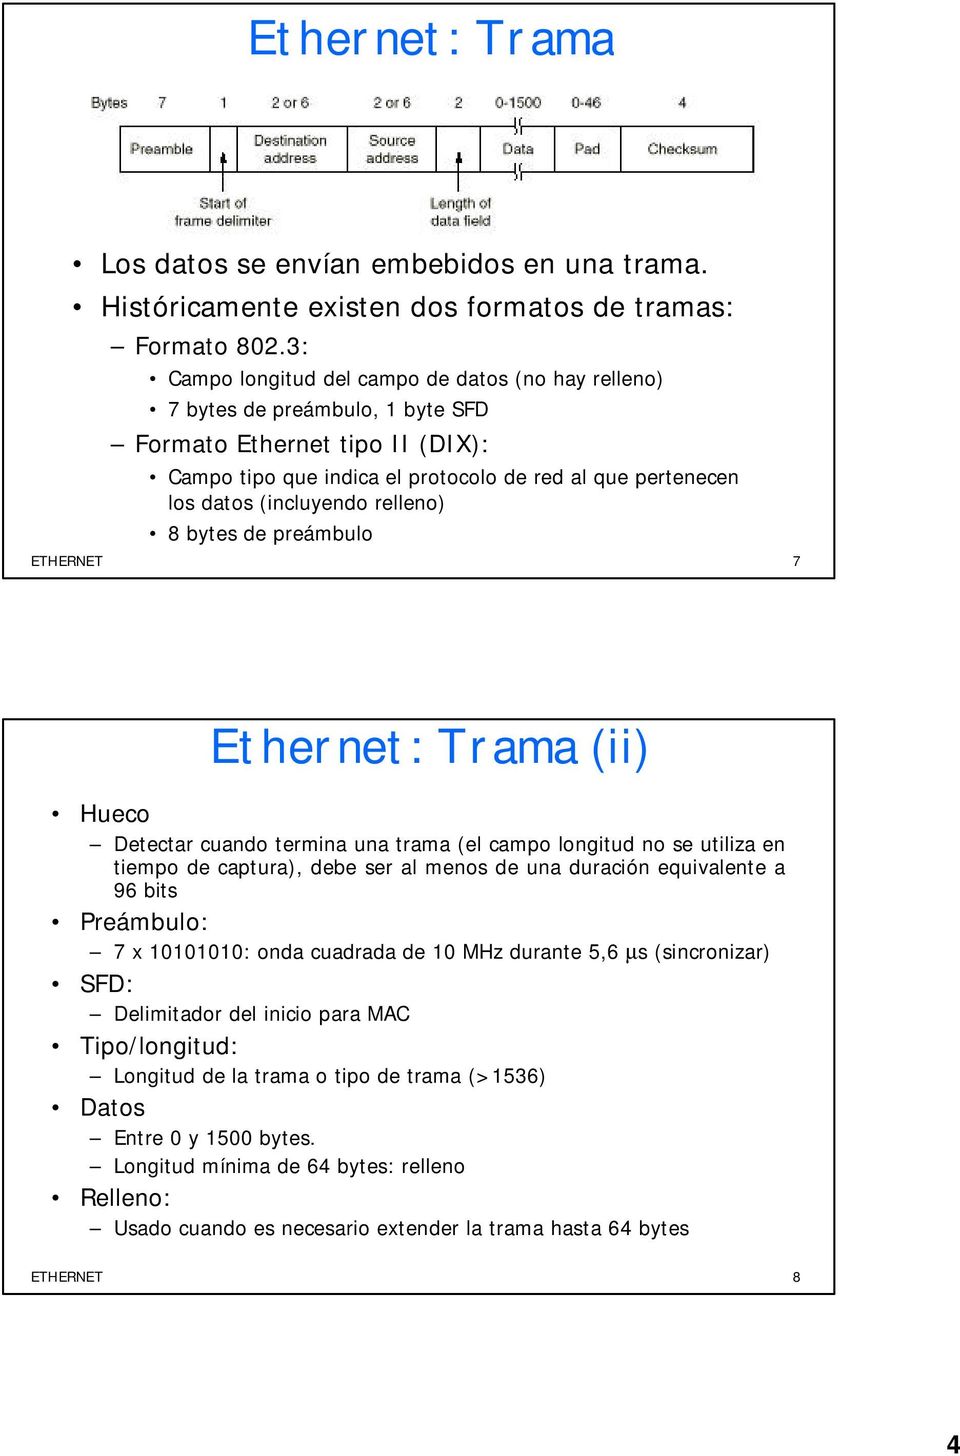 (incluyendo relleno) 8 bytes de preámbulo ETHERNET 7 Ethernet: Trama (ii) Hueco Detectar cuando termina una trama (el campo longitud no se utiliza en tiempo de captura), debe ser al menos de una